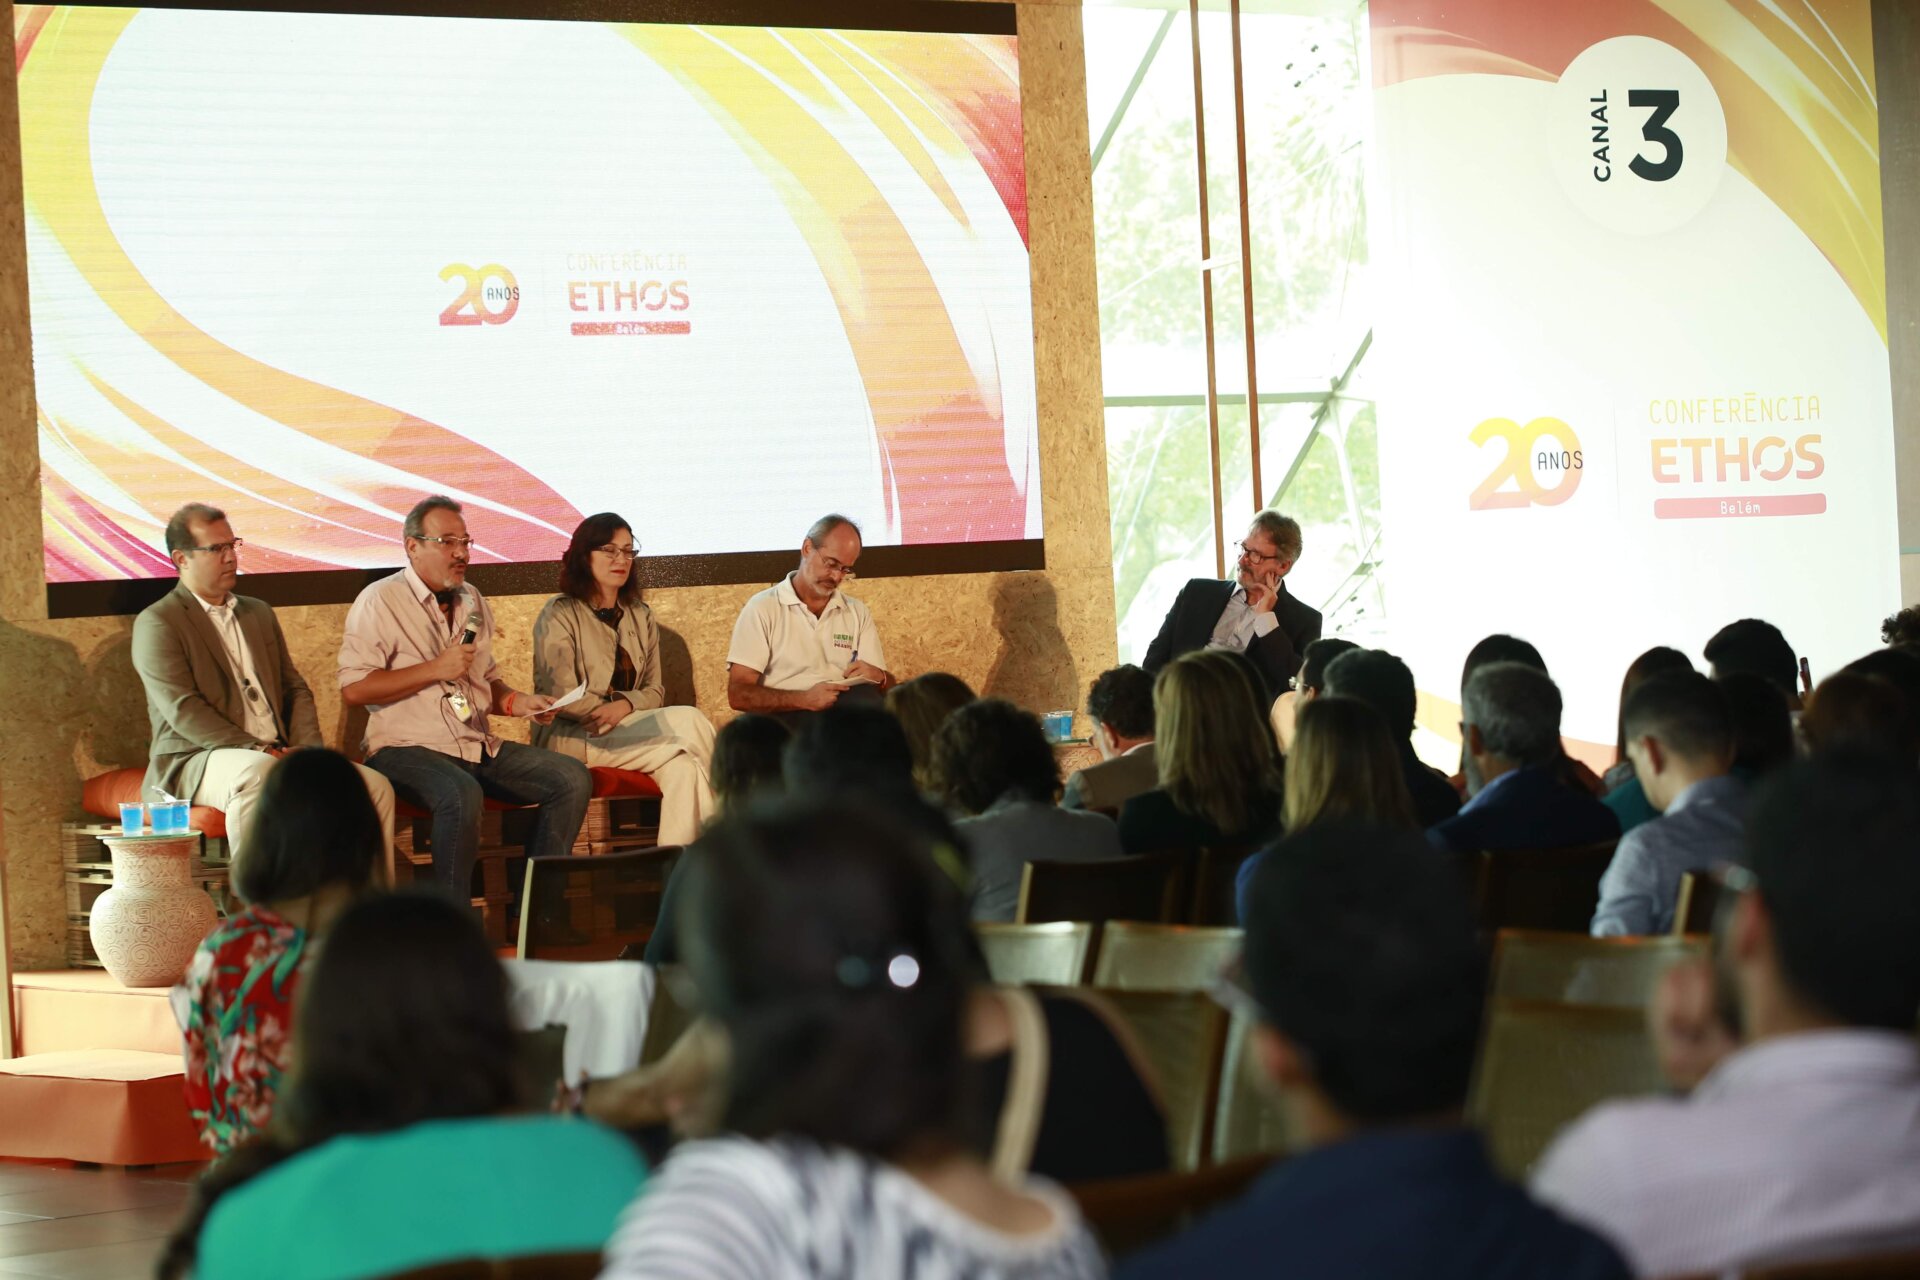 2ª edição da Conferência Ethos, em Belém, promoveu diálogo sobre as necessidades da Amazônia e as oportunidades para o desenvolvimento local